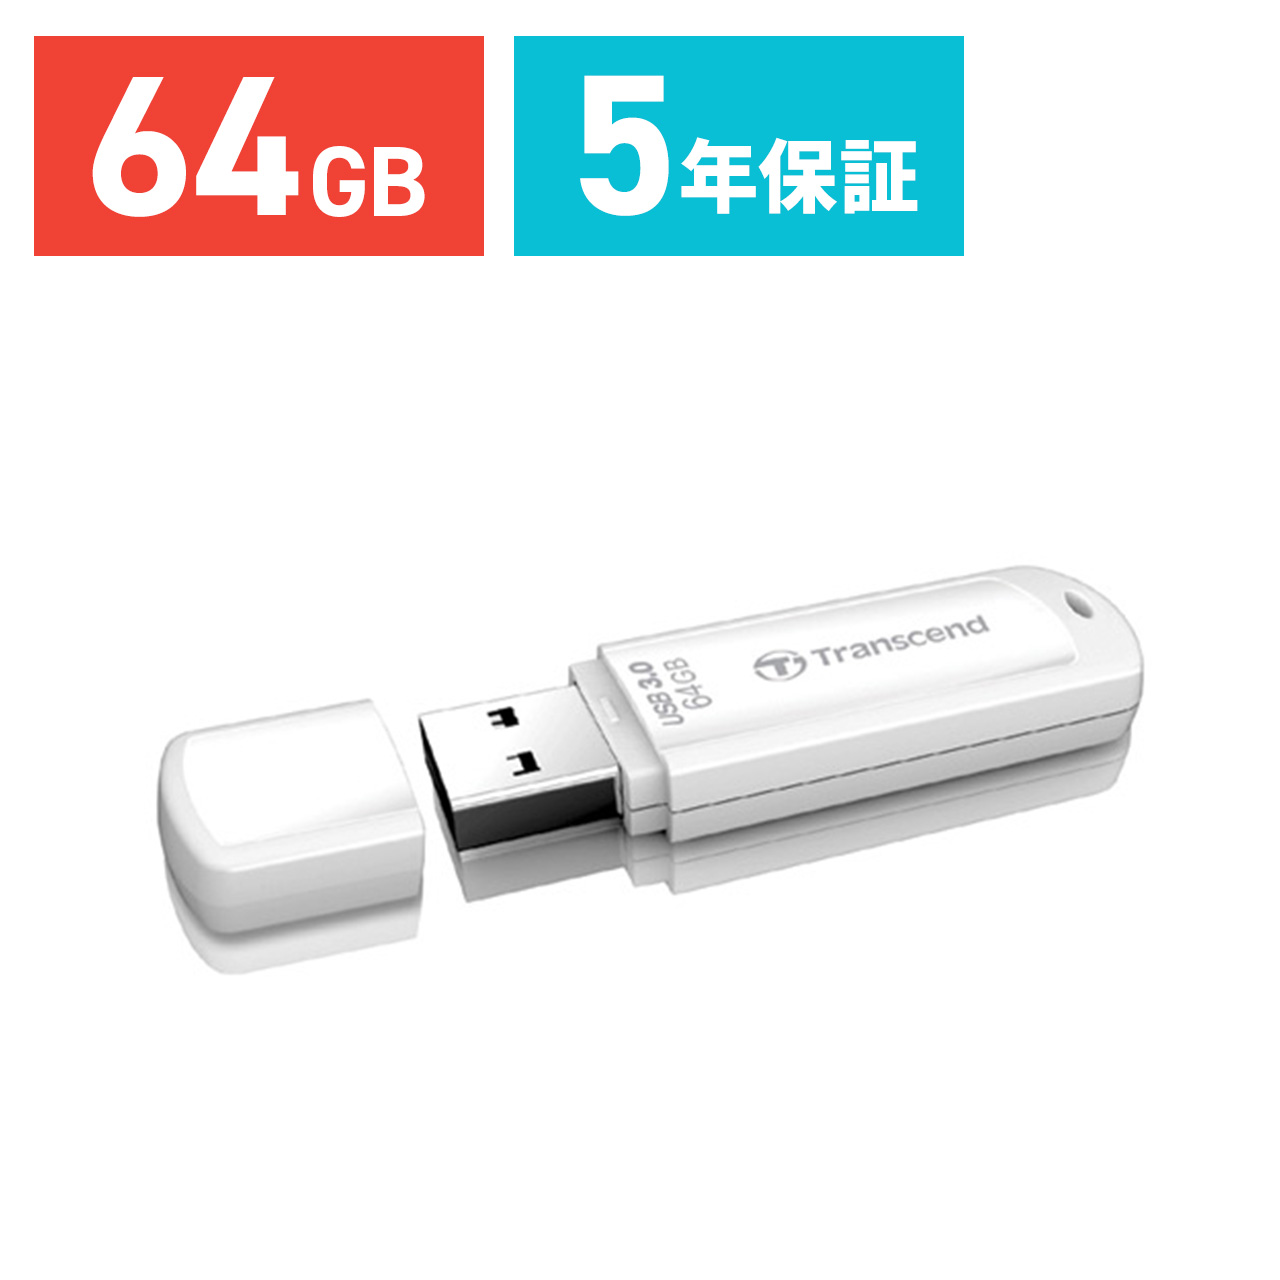 USBメモリ 64GB USB3.0 Transcend社製 TS64GJF730 5年保証